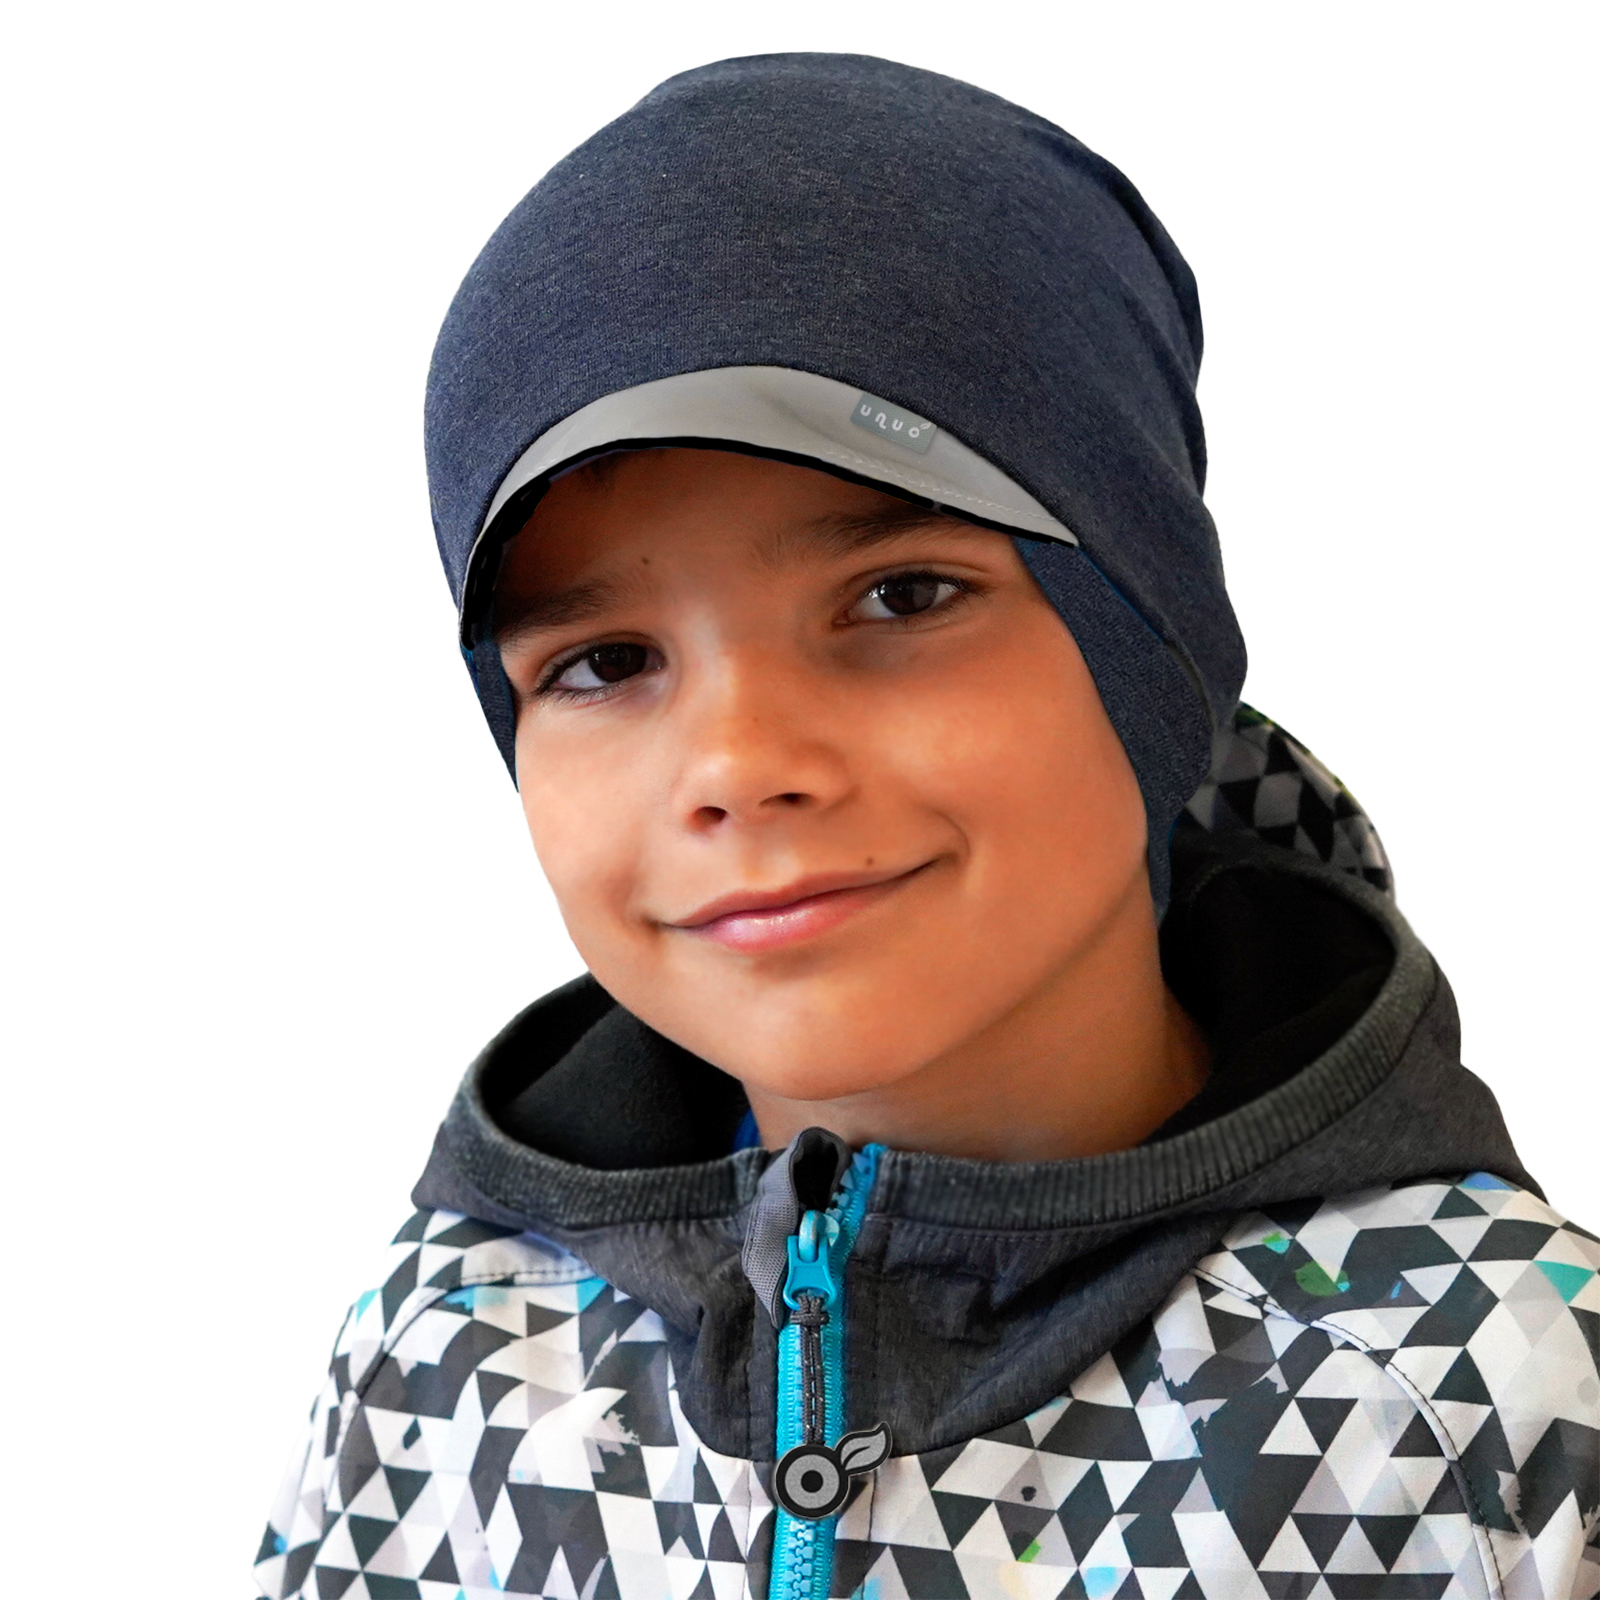 Unuo Dětská čepice z teplákoviny s reflexním kšiltem spadená, Jeans temný, Černá, S (45 - 48 cm)